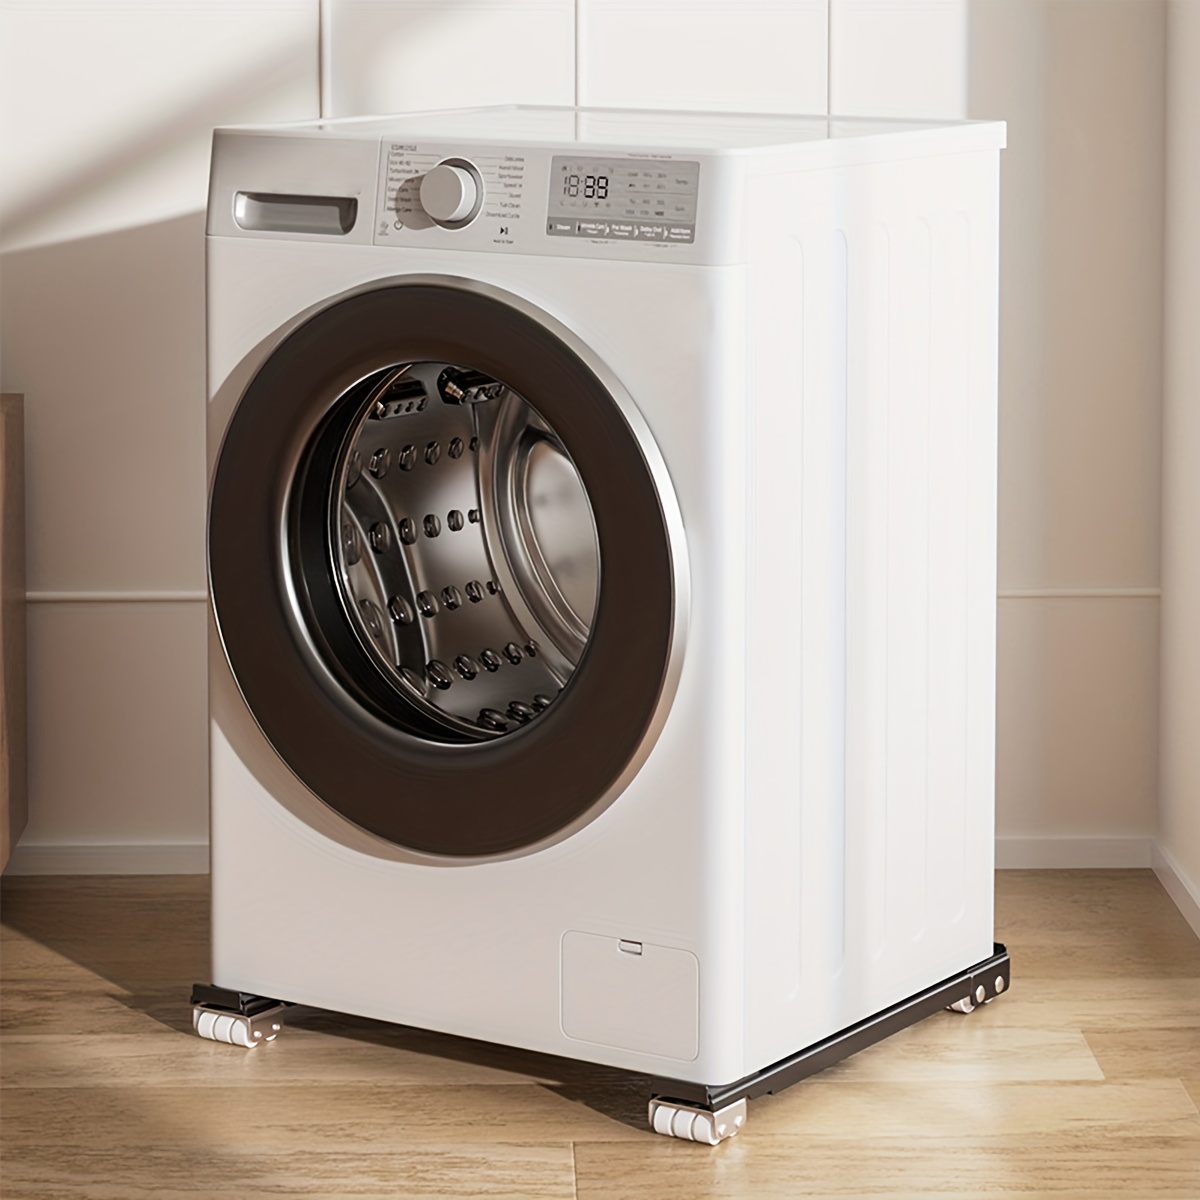 Soporte de lavadora ajustable, soporte de refrigerador móvil para lavadora,  soporte antideslizante para base de lavadora, placa de metal de 24 ruedas